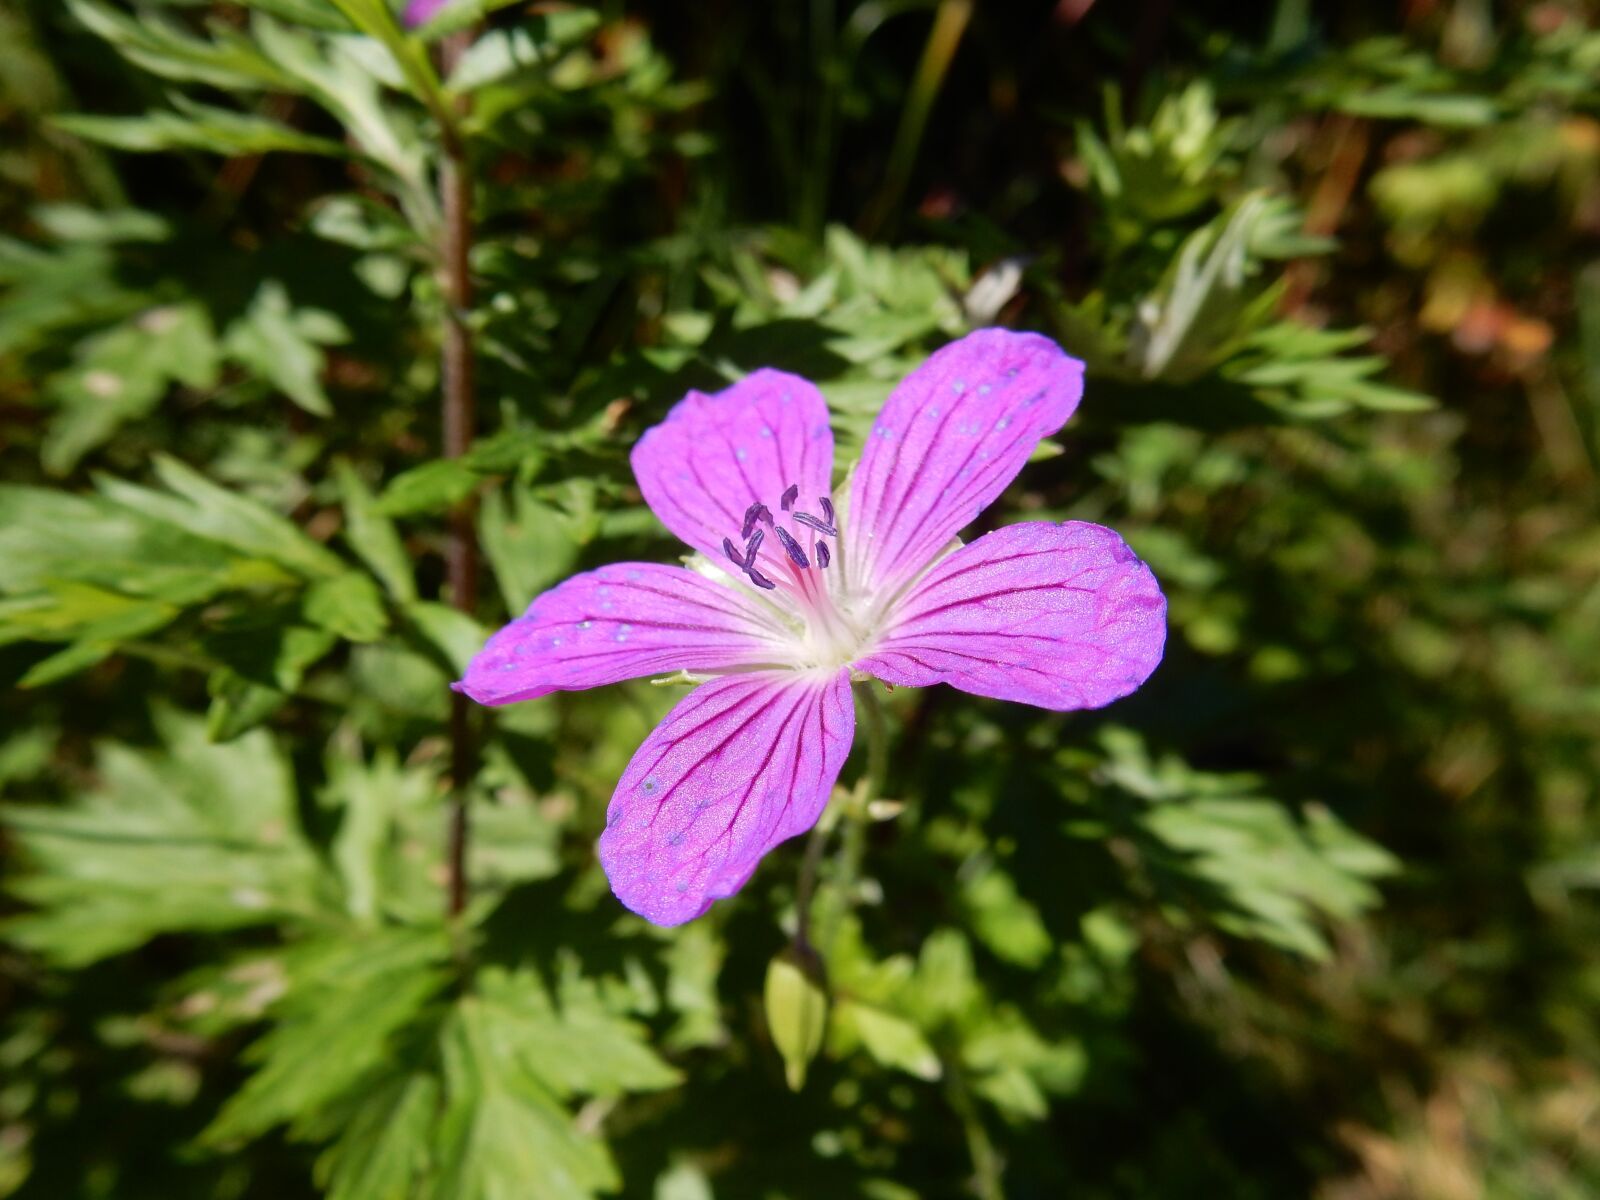 Nikon Coolpix S9900 sample photo. Geranium, violet flower, close photography